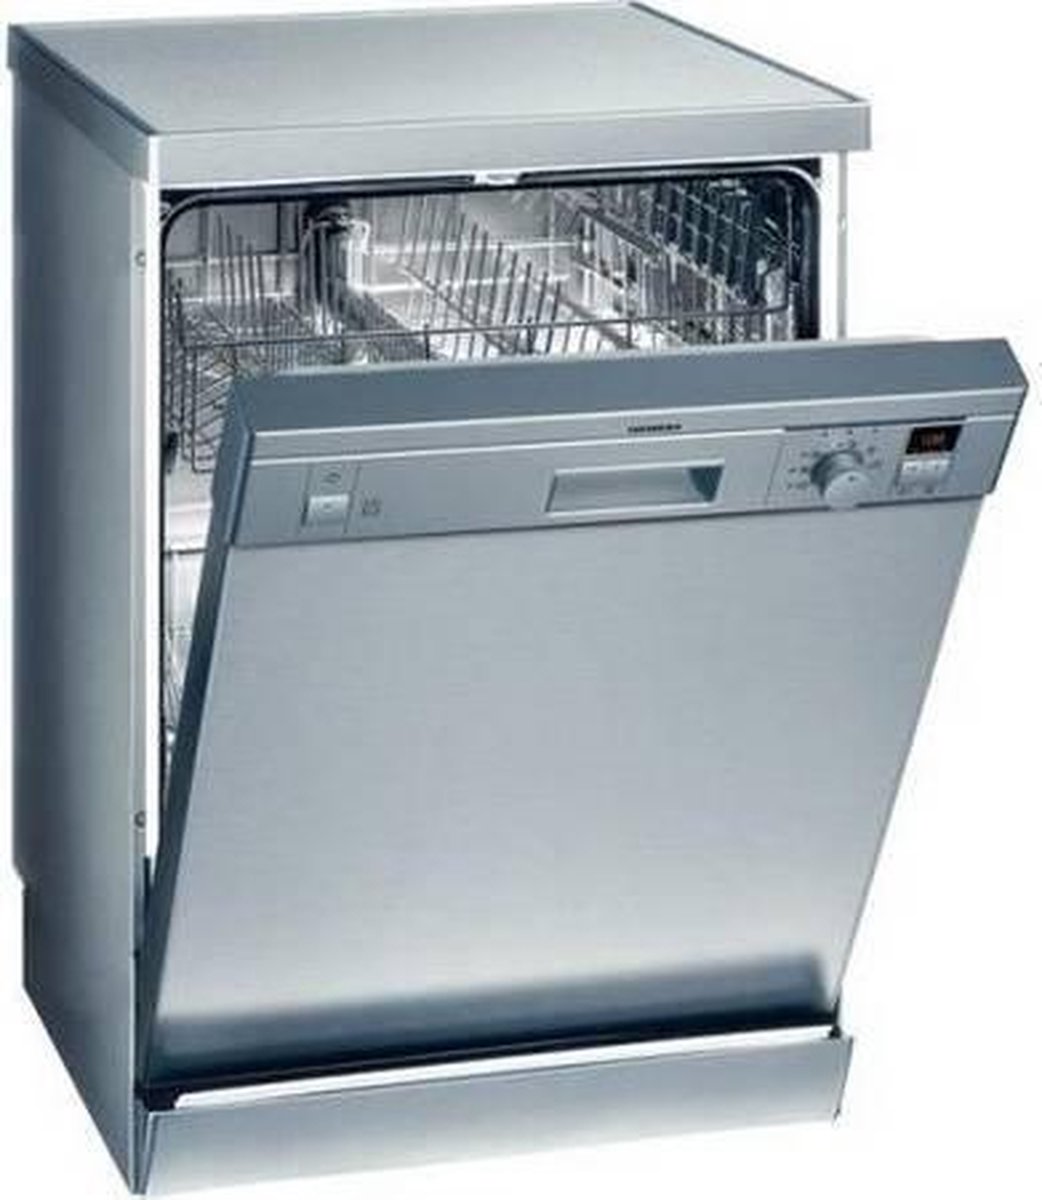 Посудомоечная машина 60 см купить в спб. Посудомоечная машина Siemens se25. Посудомоечная машина Siemens se 25m271. Посудомоечная машина Siemens se 25t052. Посудомоечная машина Siemens se 25m259.